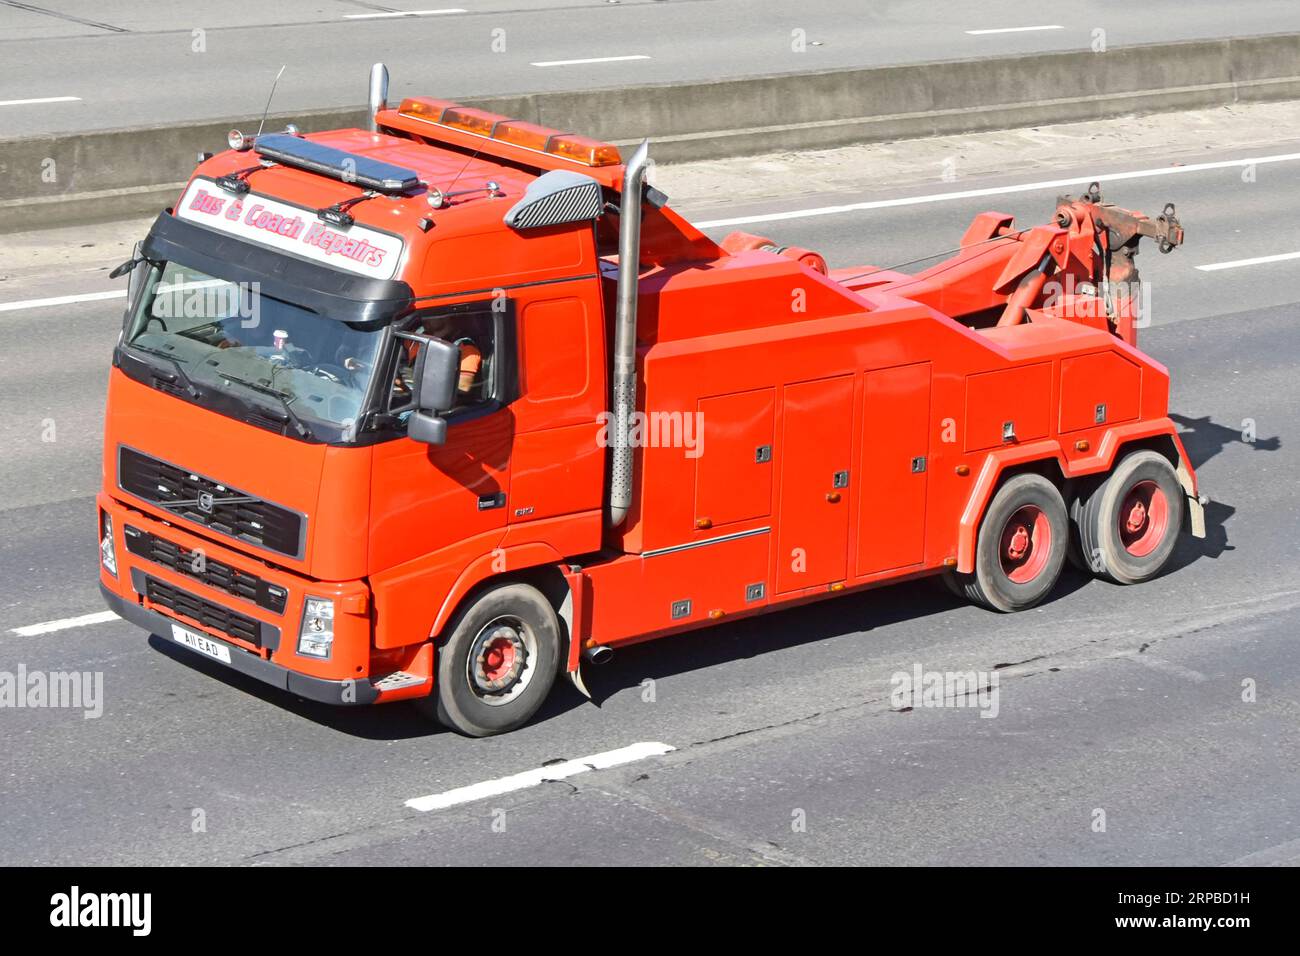 Regardant vers le bas sur la peinture rouge propre non marquée sur bus et autocar Volvo hgv camion une entreprise de dépannage de remorquage de véhicule commercial sur l'autoroute M25 UK Banque D'Images